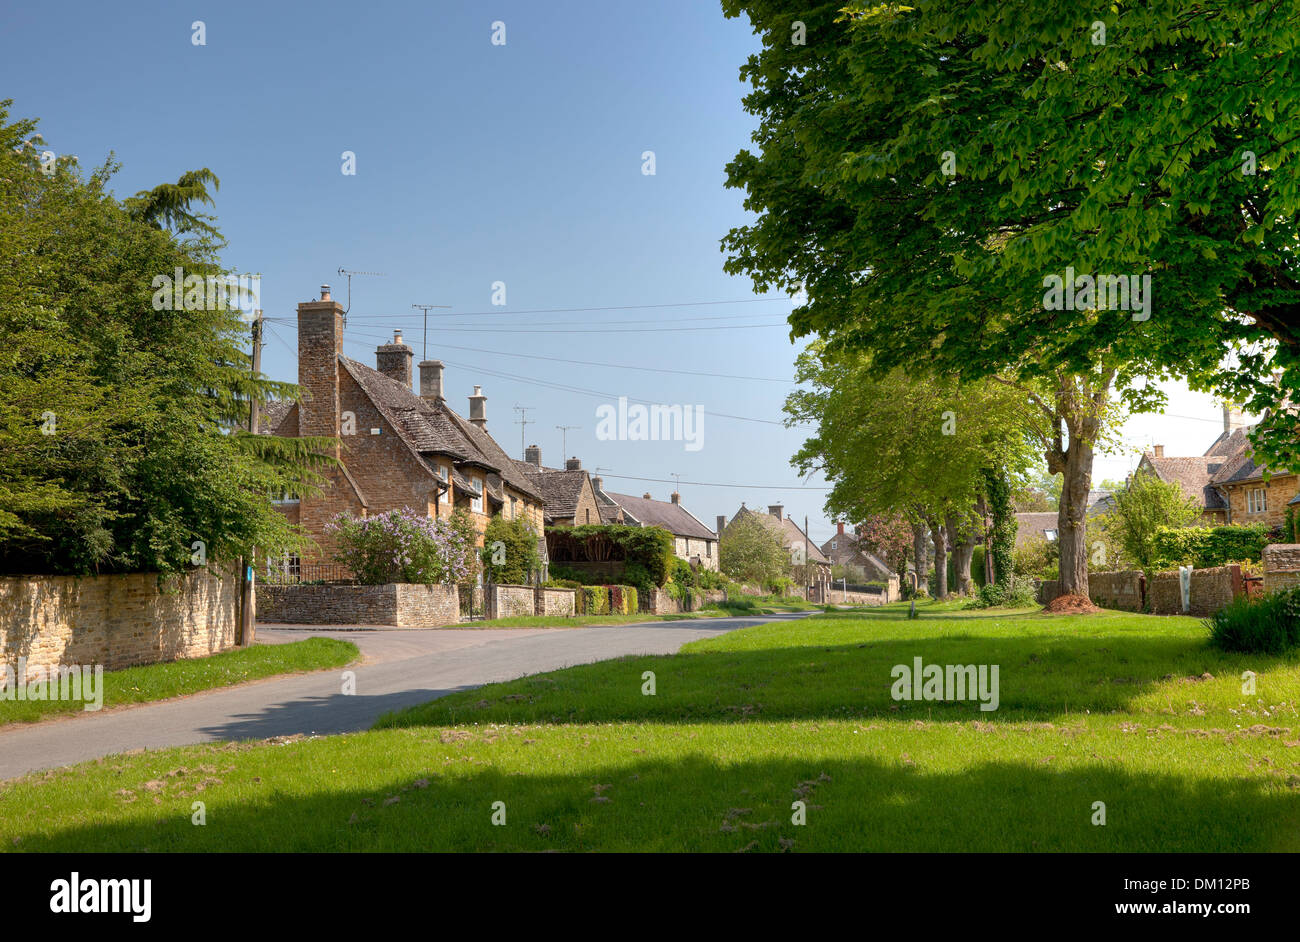 Le village de Cotswold Kingham, Oxfordshire, Angleterre. Banque D'Images